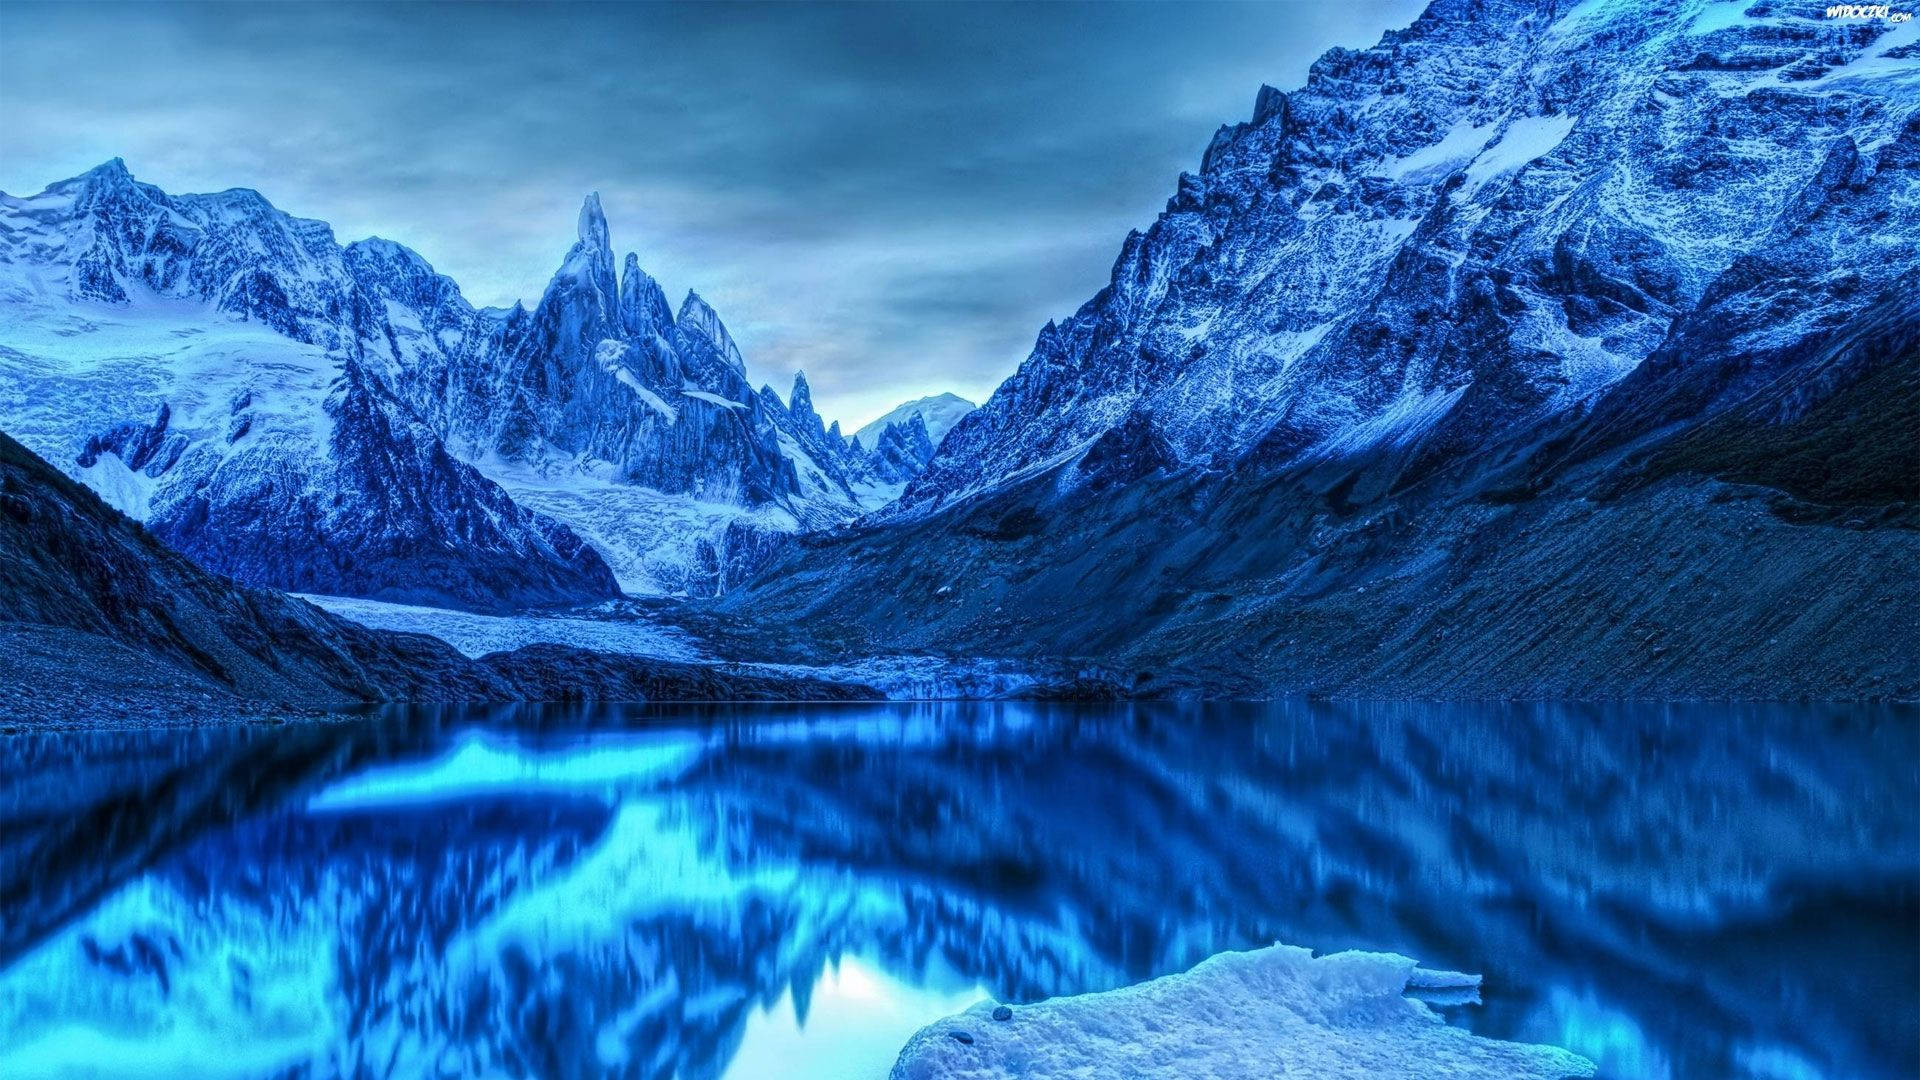 Patagonia Monochromatic Blue Mountain Range Background